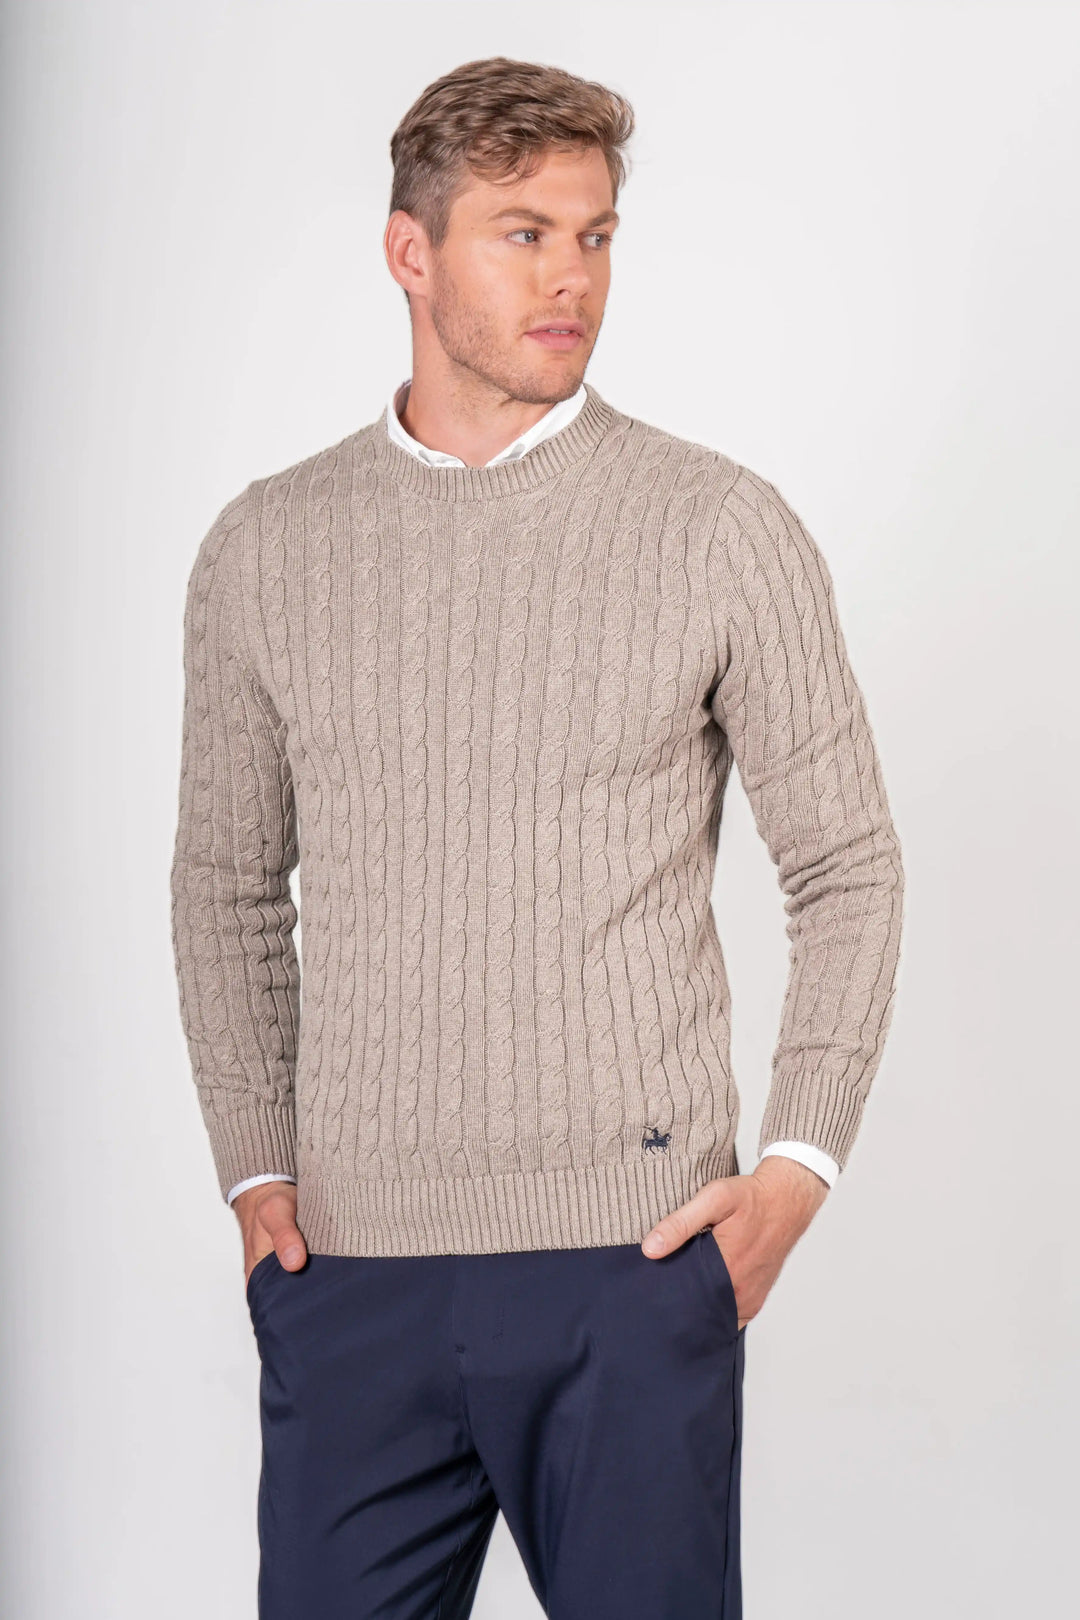 Sweater Hombre Combinado Cuello Redondo Premium Importado